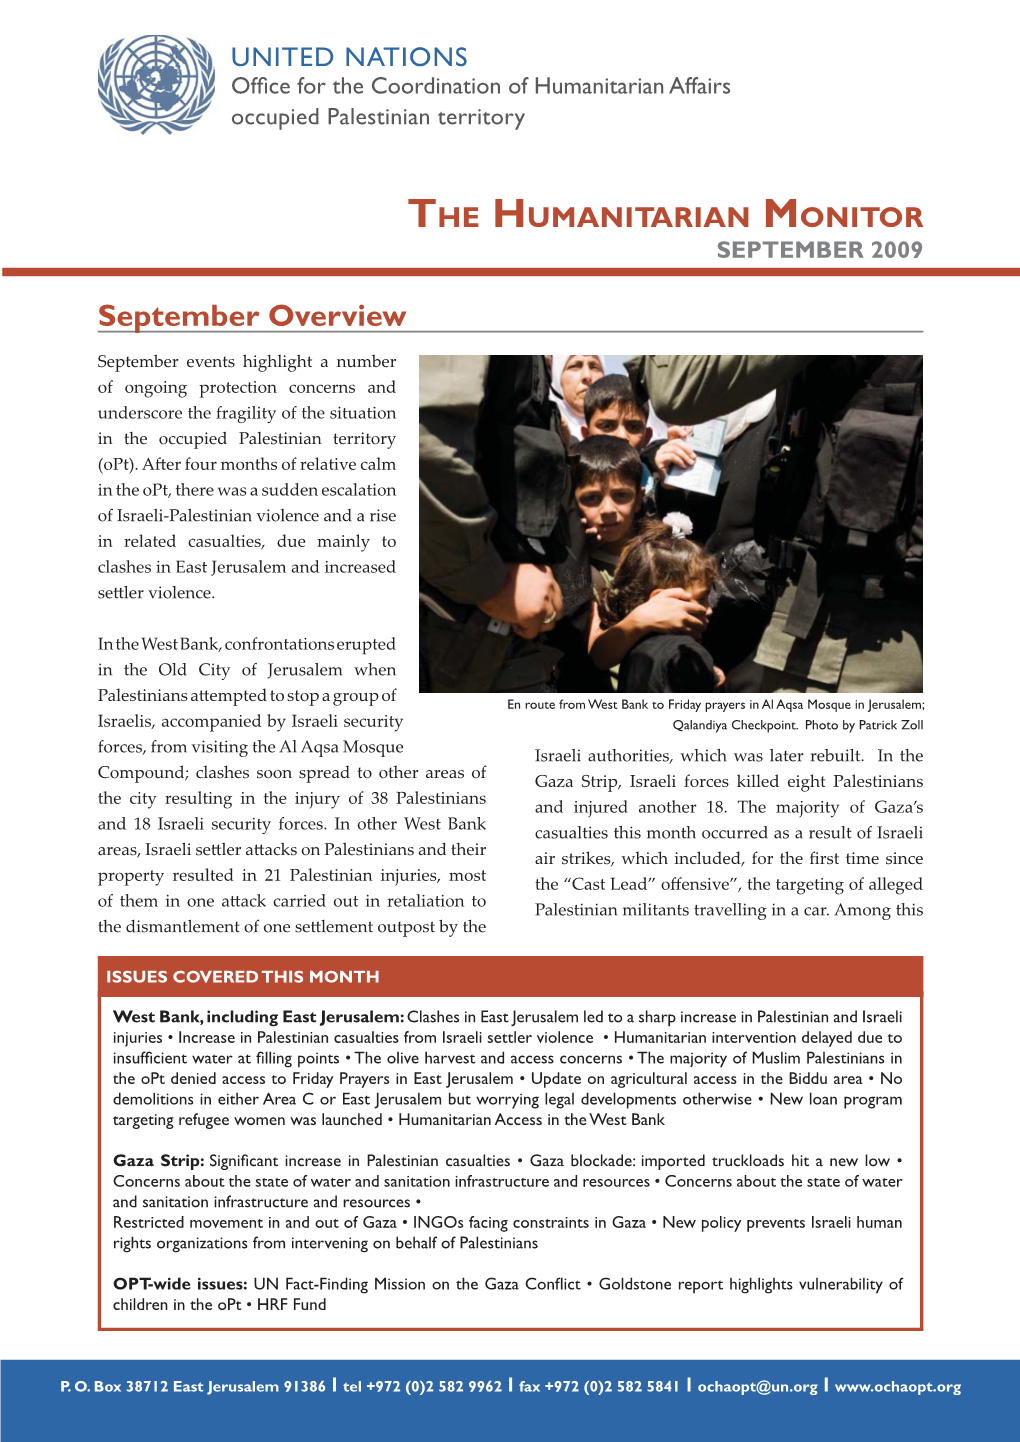 The Humanitarian Monitor September 2009